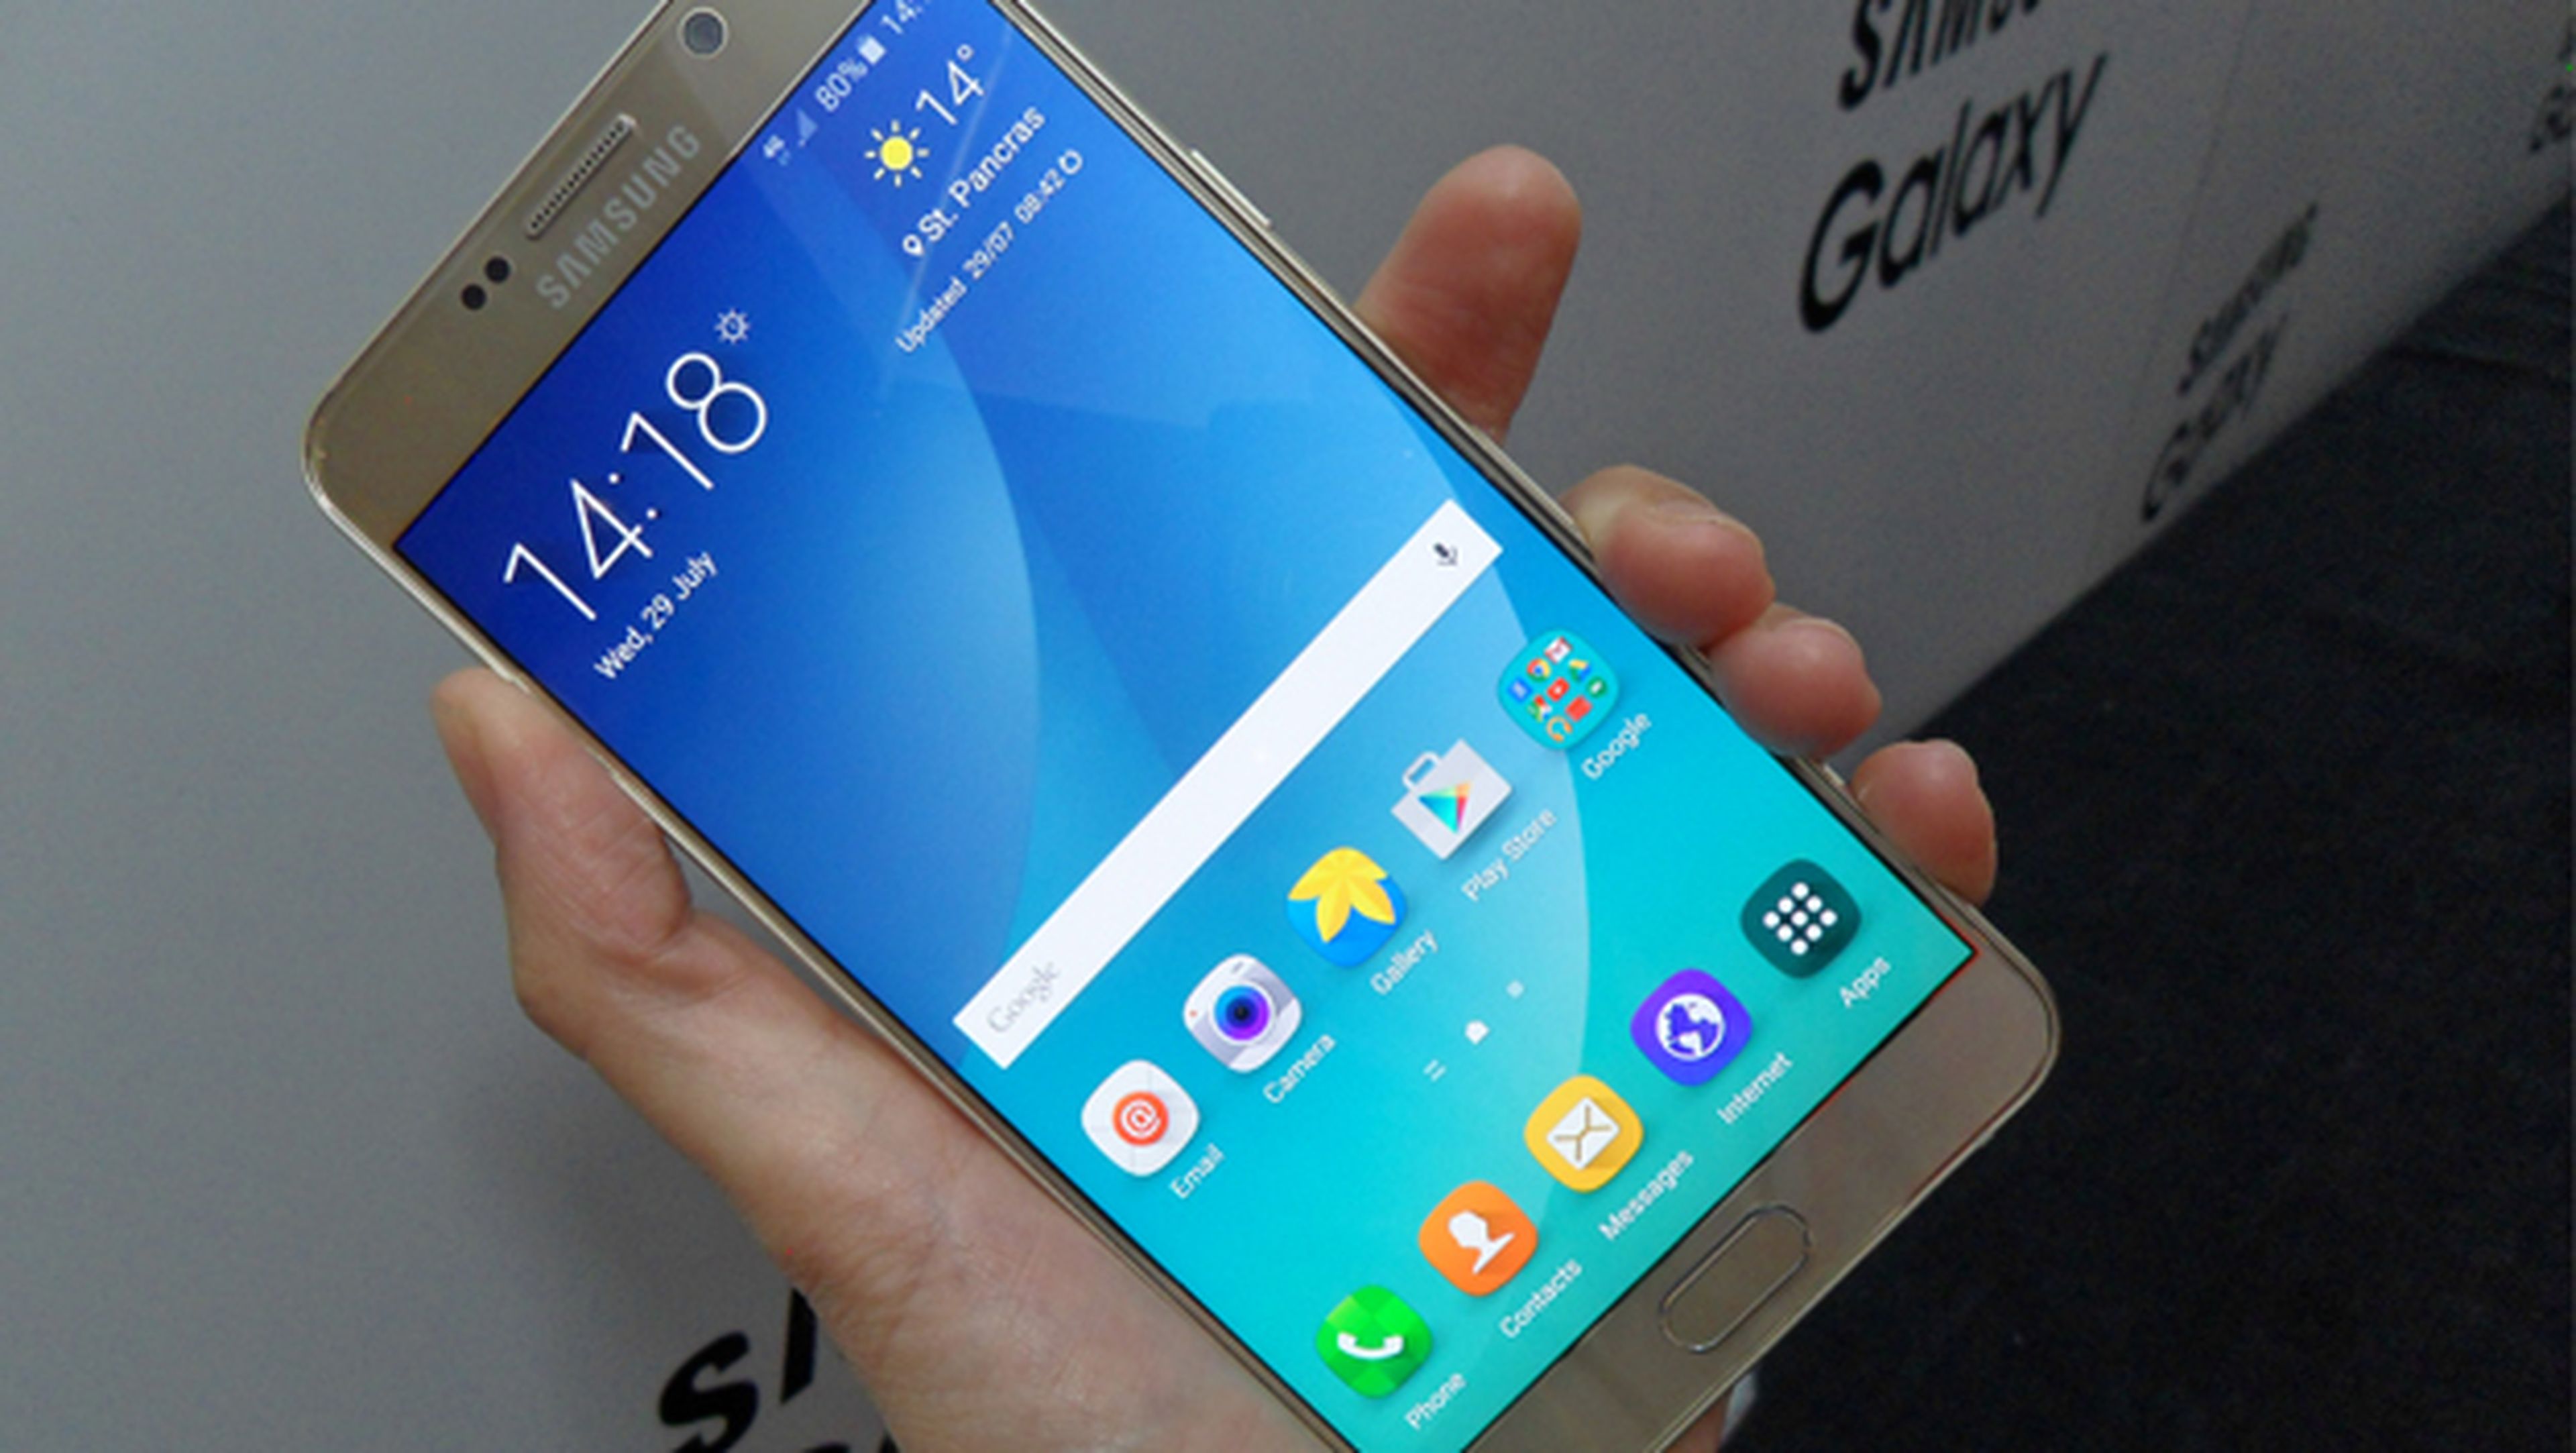 Samsung Galaxy Note 5, toma de contacto y primeras impresiones